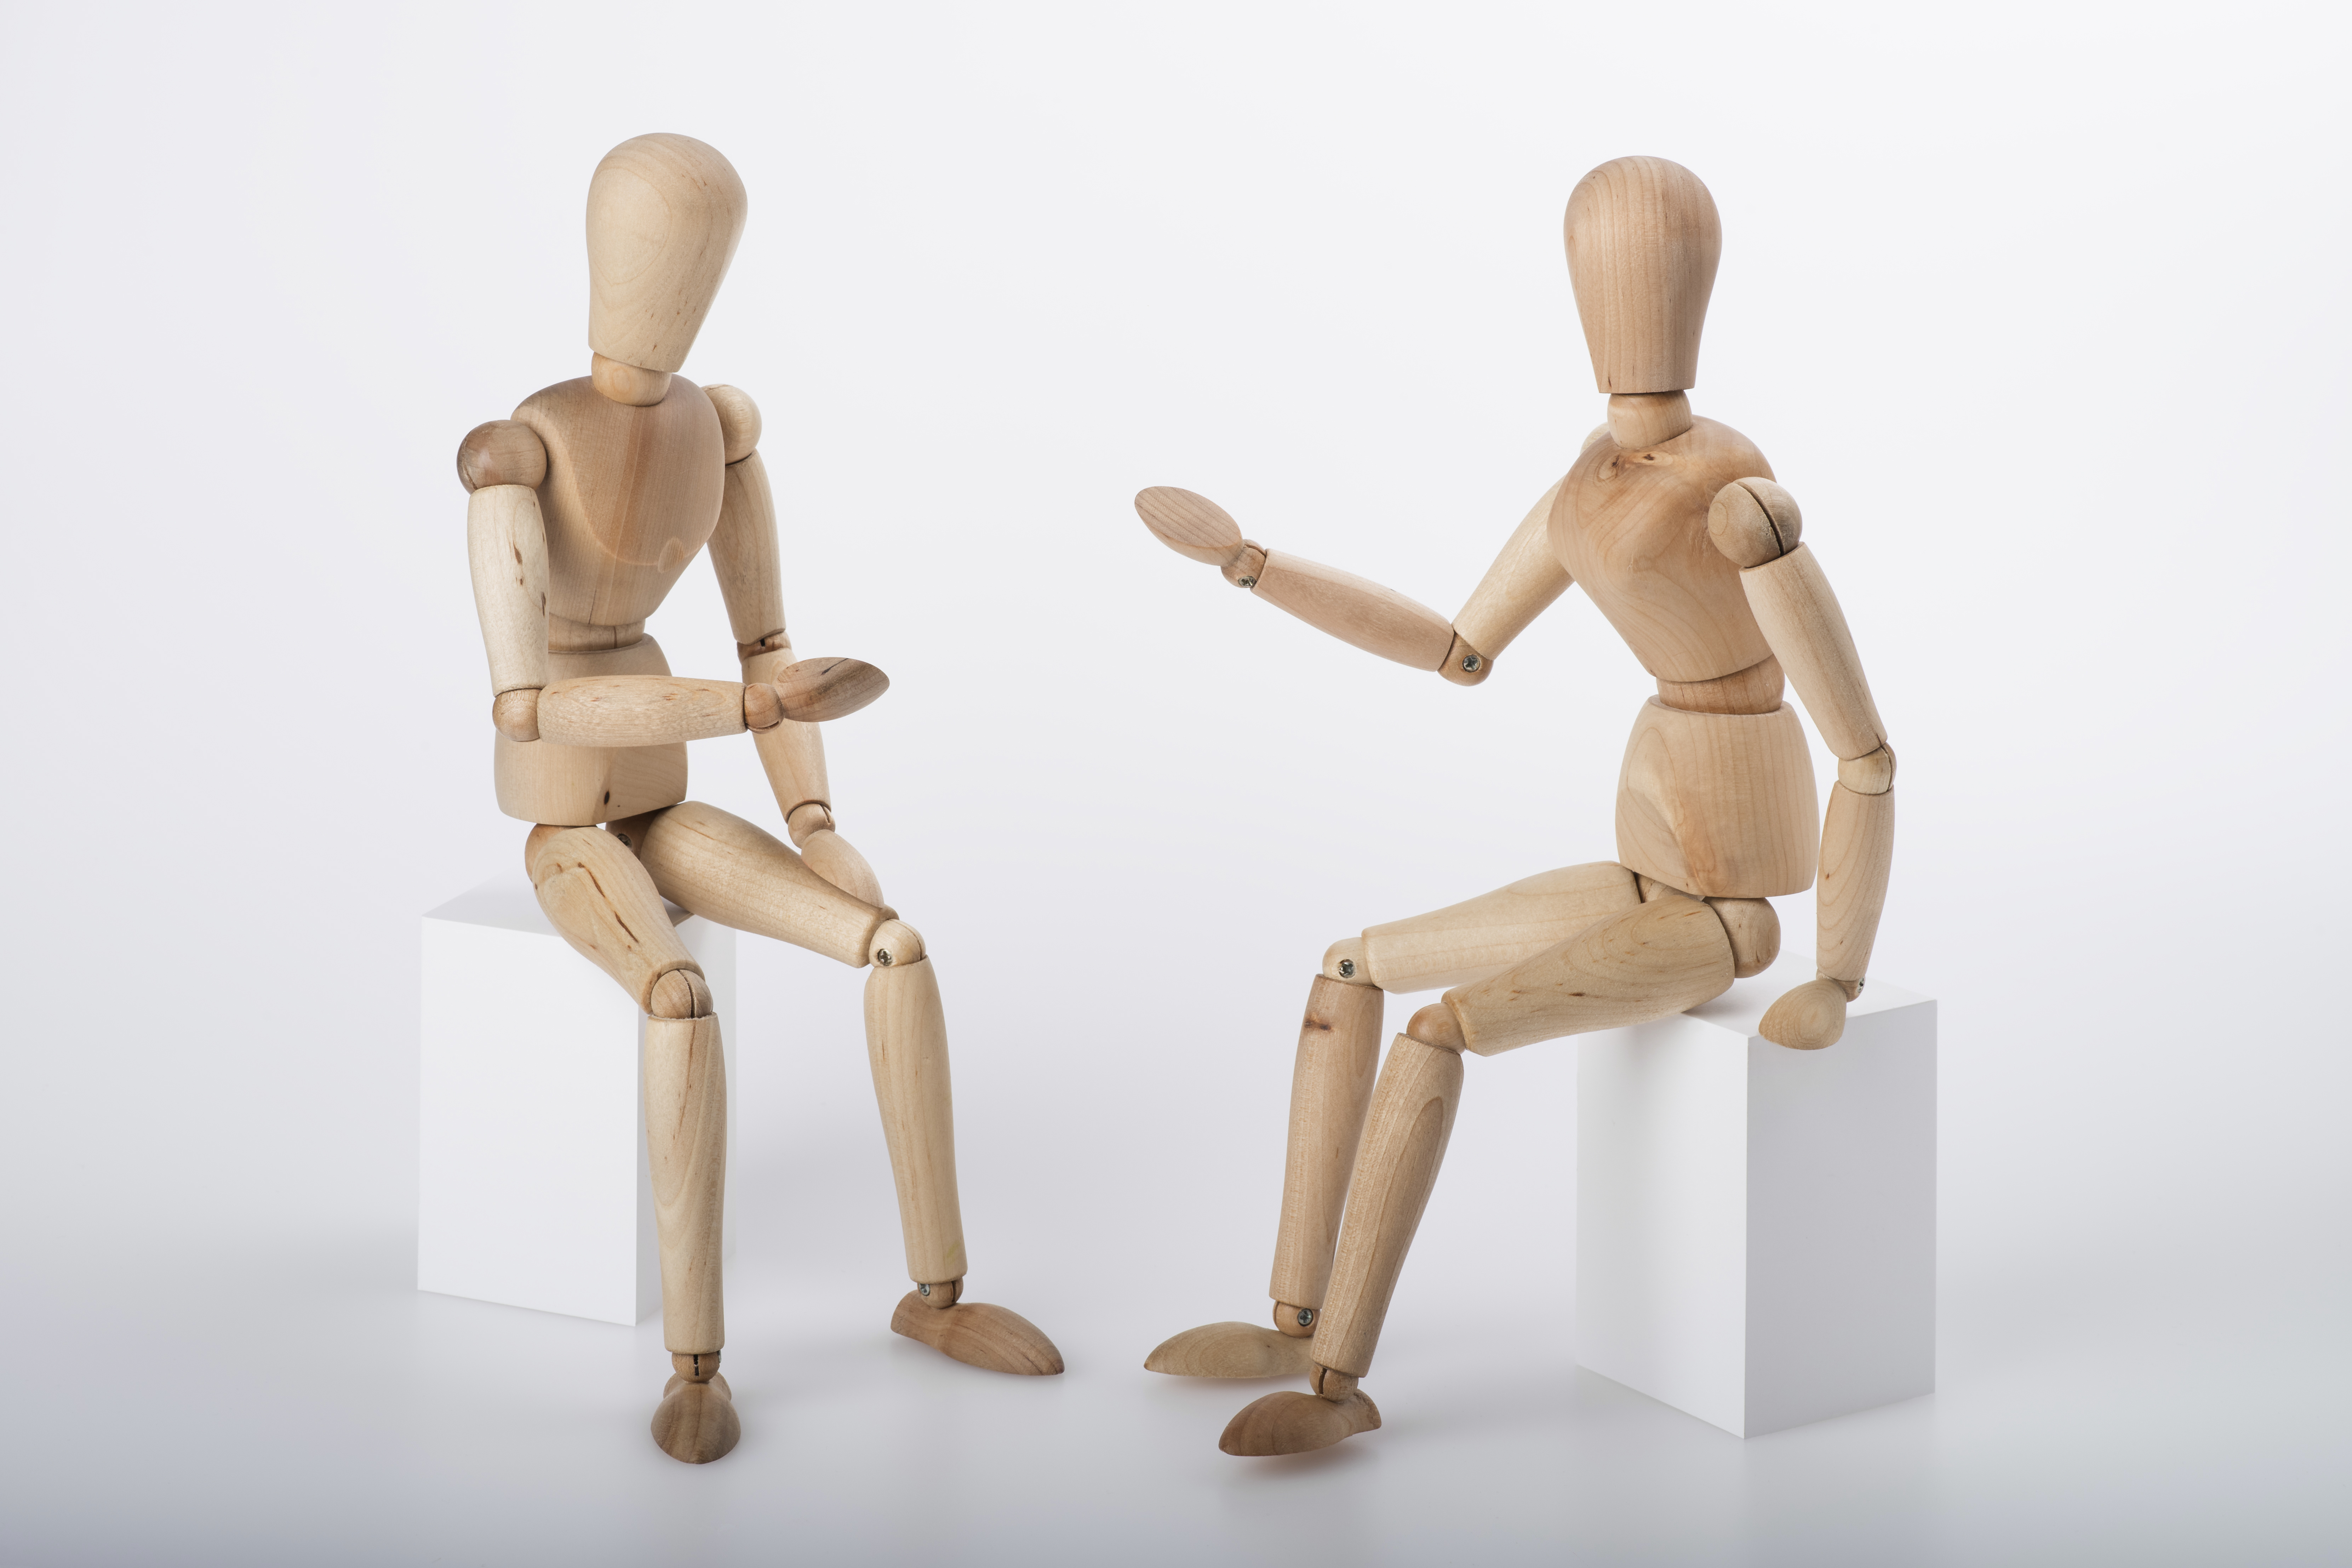 Zwei Figuren aus Naturholz mit verstellbaren Gliedern sitzen sich in einer diskutierenden Haltung gegenüber